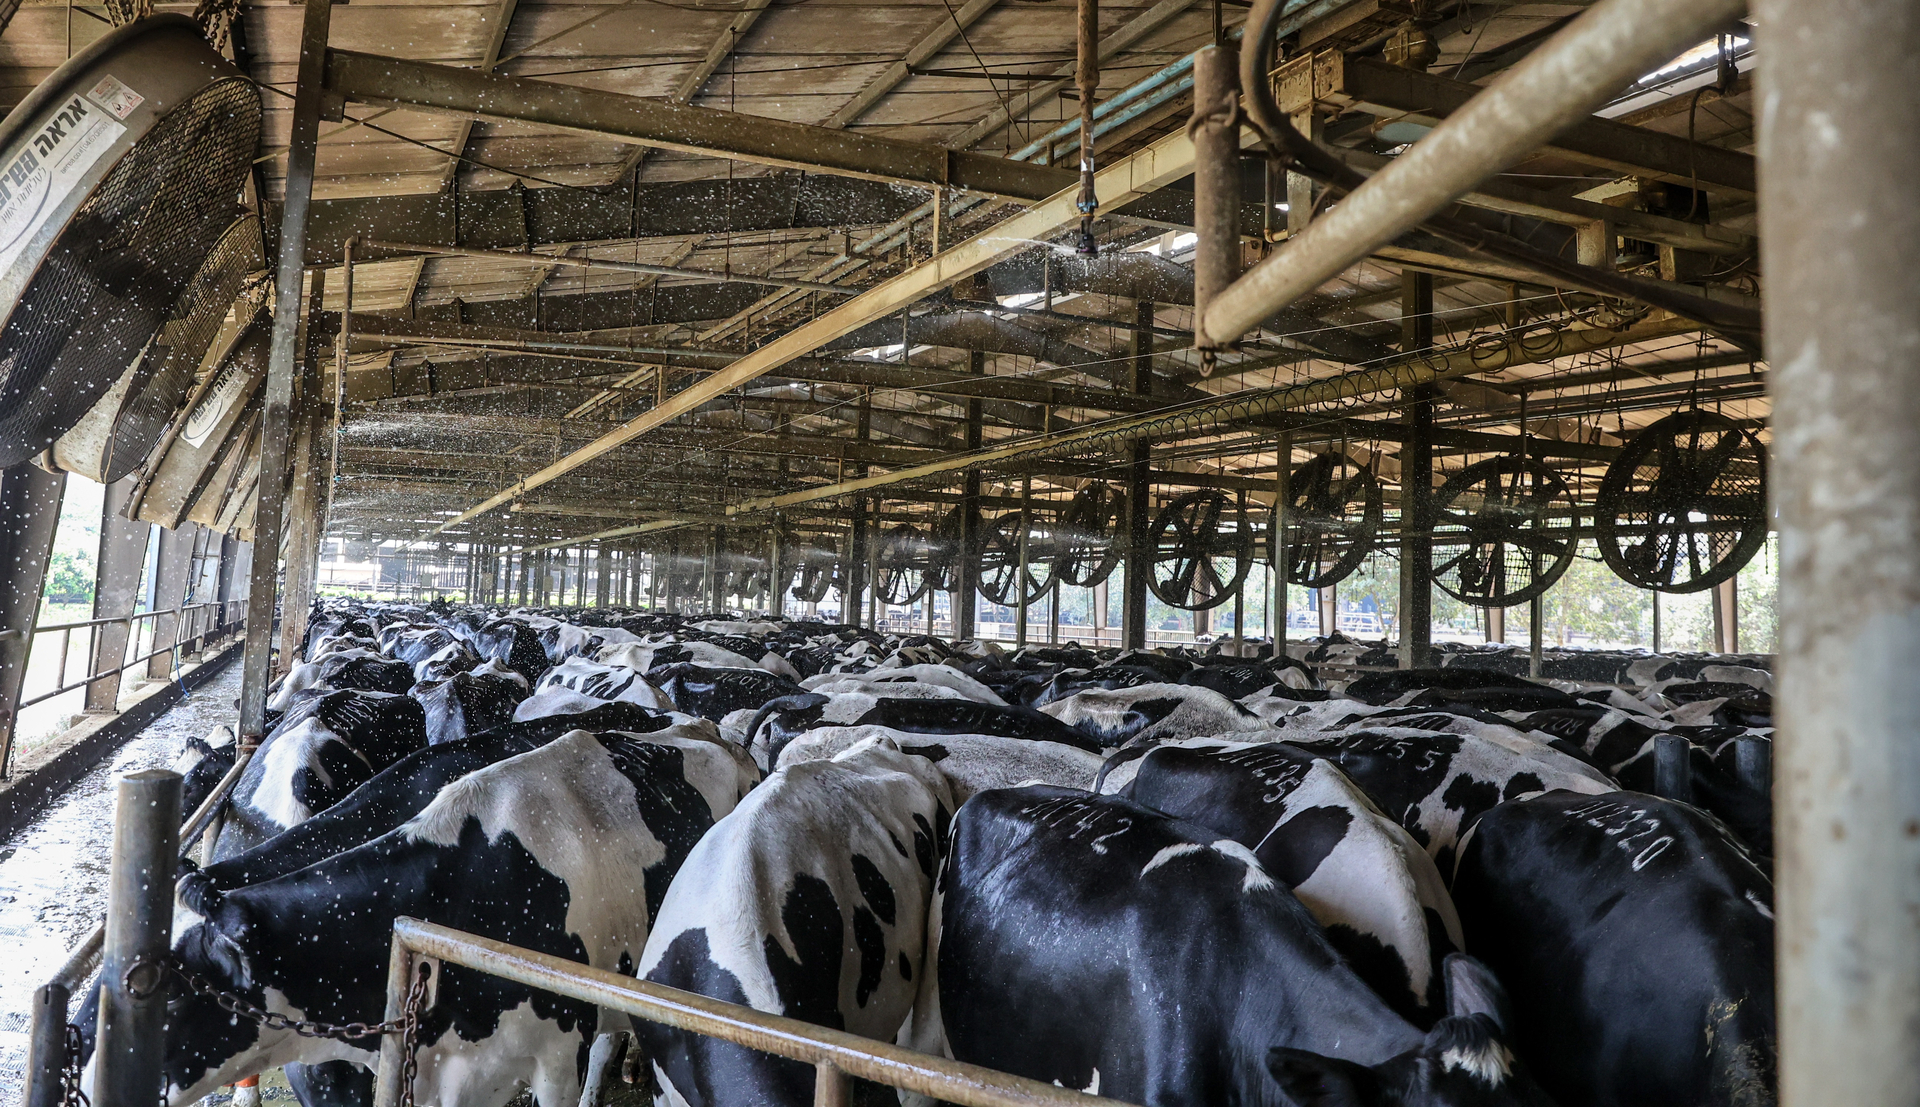 Trang trại đảm bảo đàn bò phải được sử dụng nguồn nước sạch và an toàn nhất ở tất cả các quy trình chăm sóc.